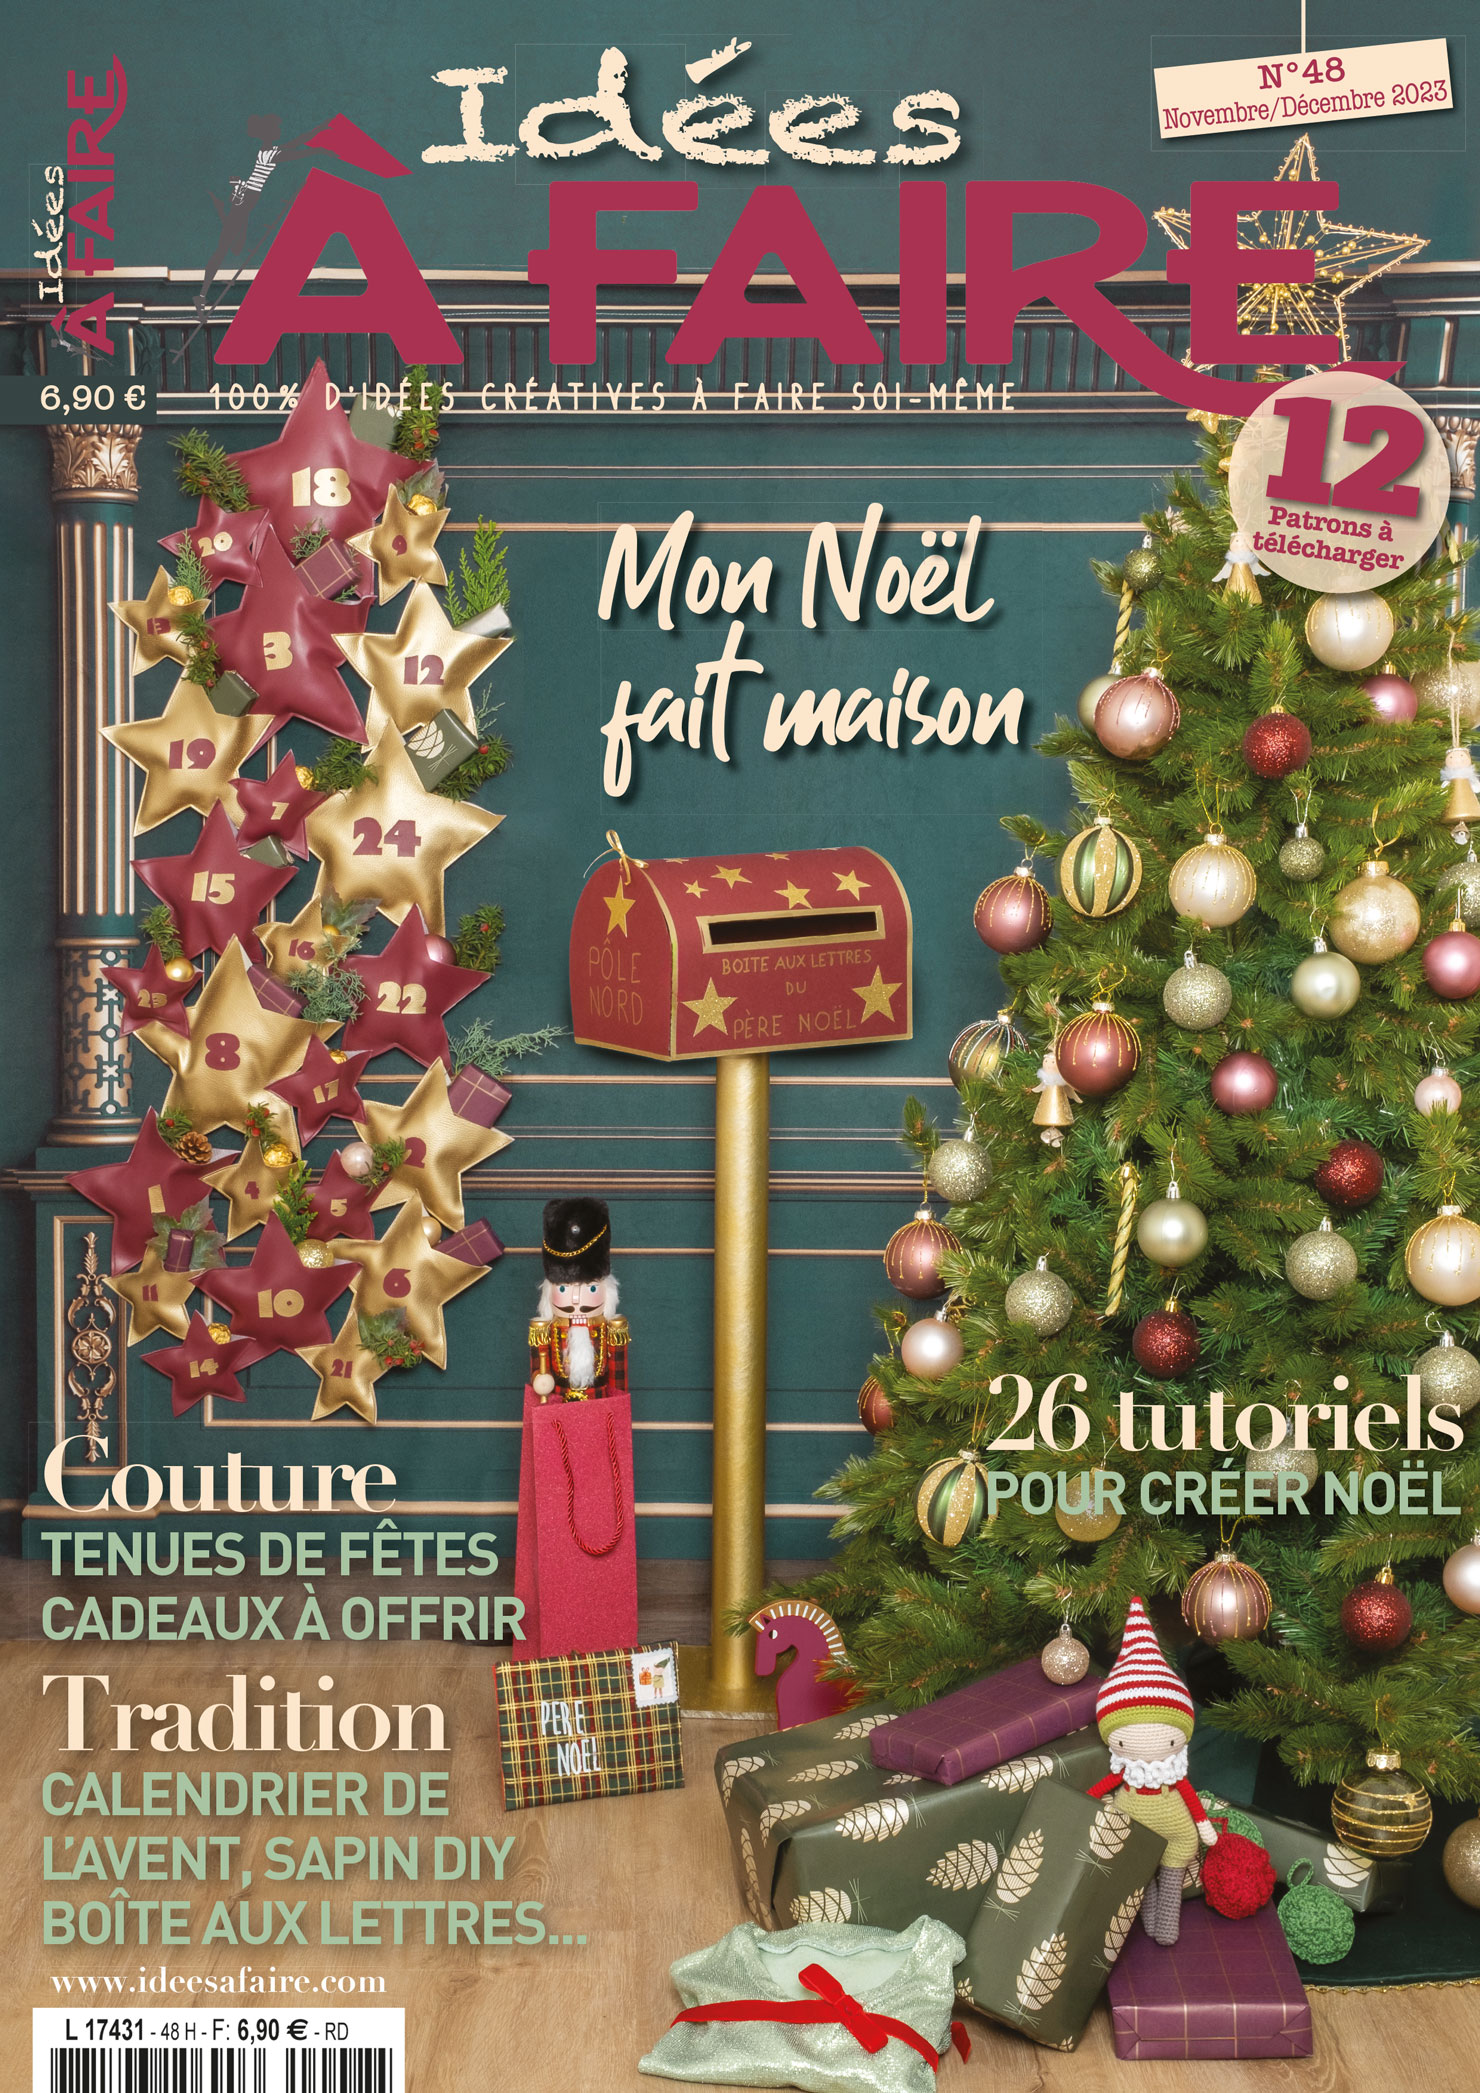 DIY Noël : tutoriel pour décorer une couronne de l'Avent avec de la laine -  Marie Claire